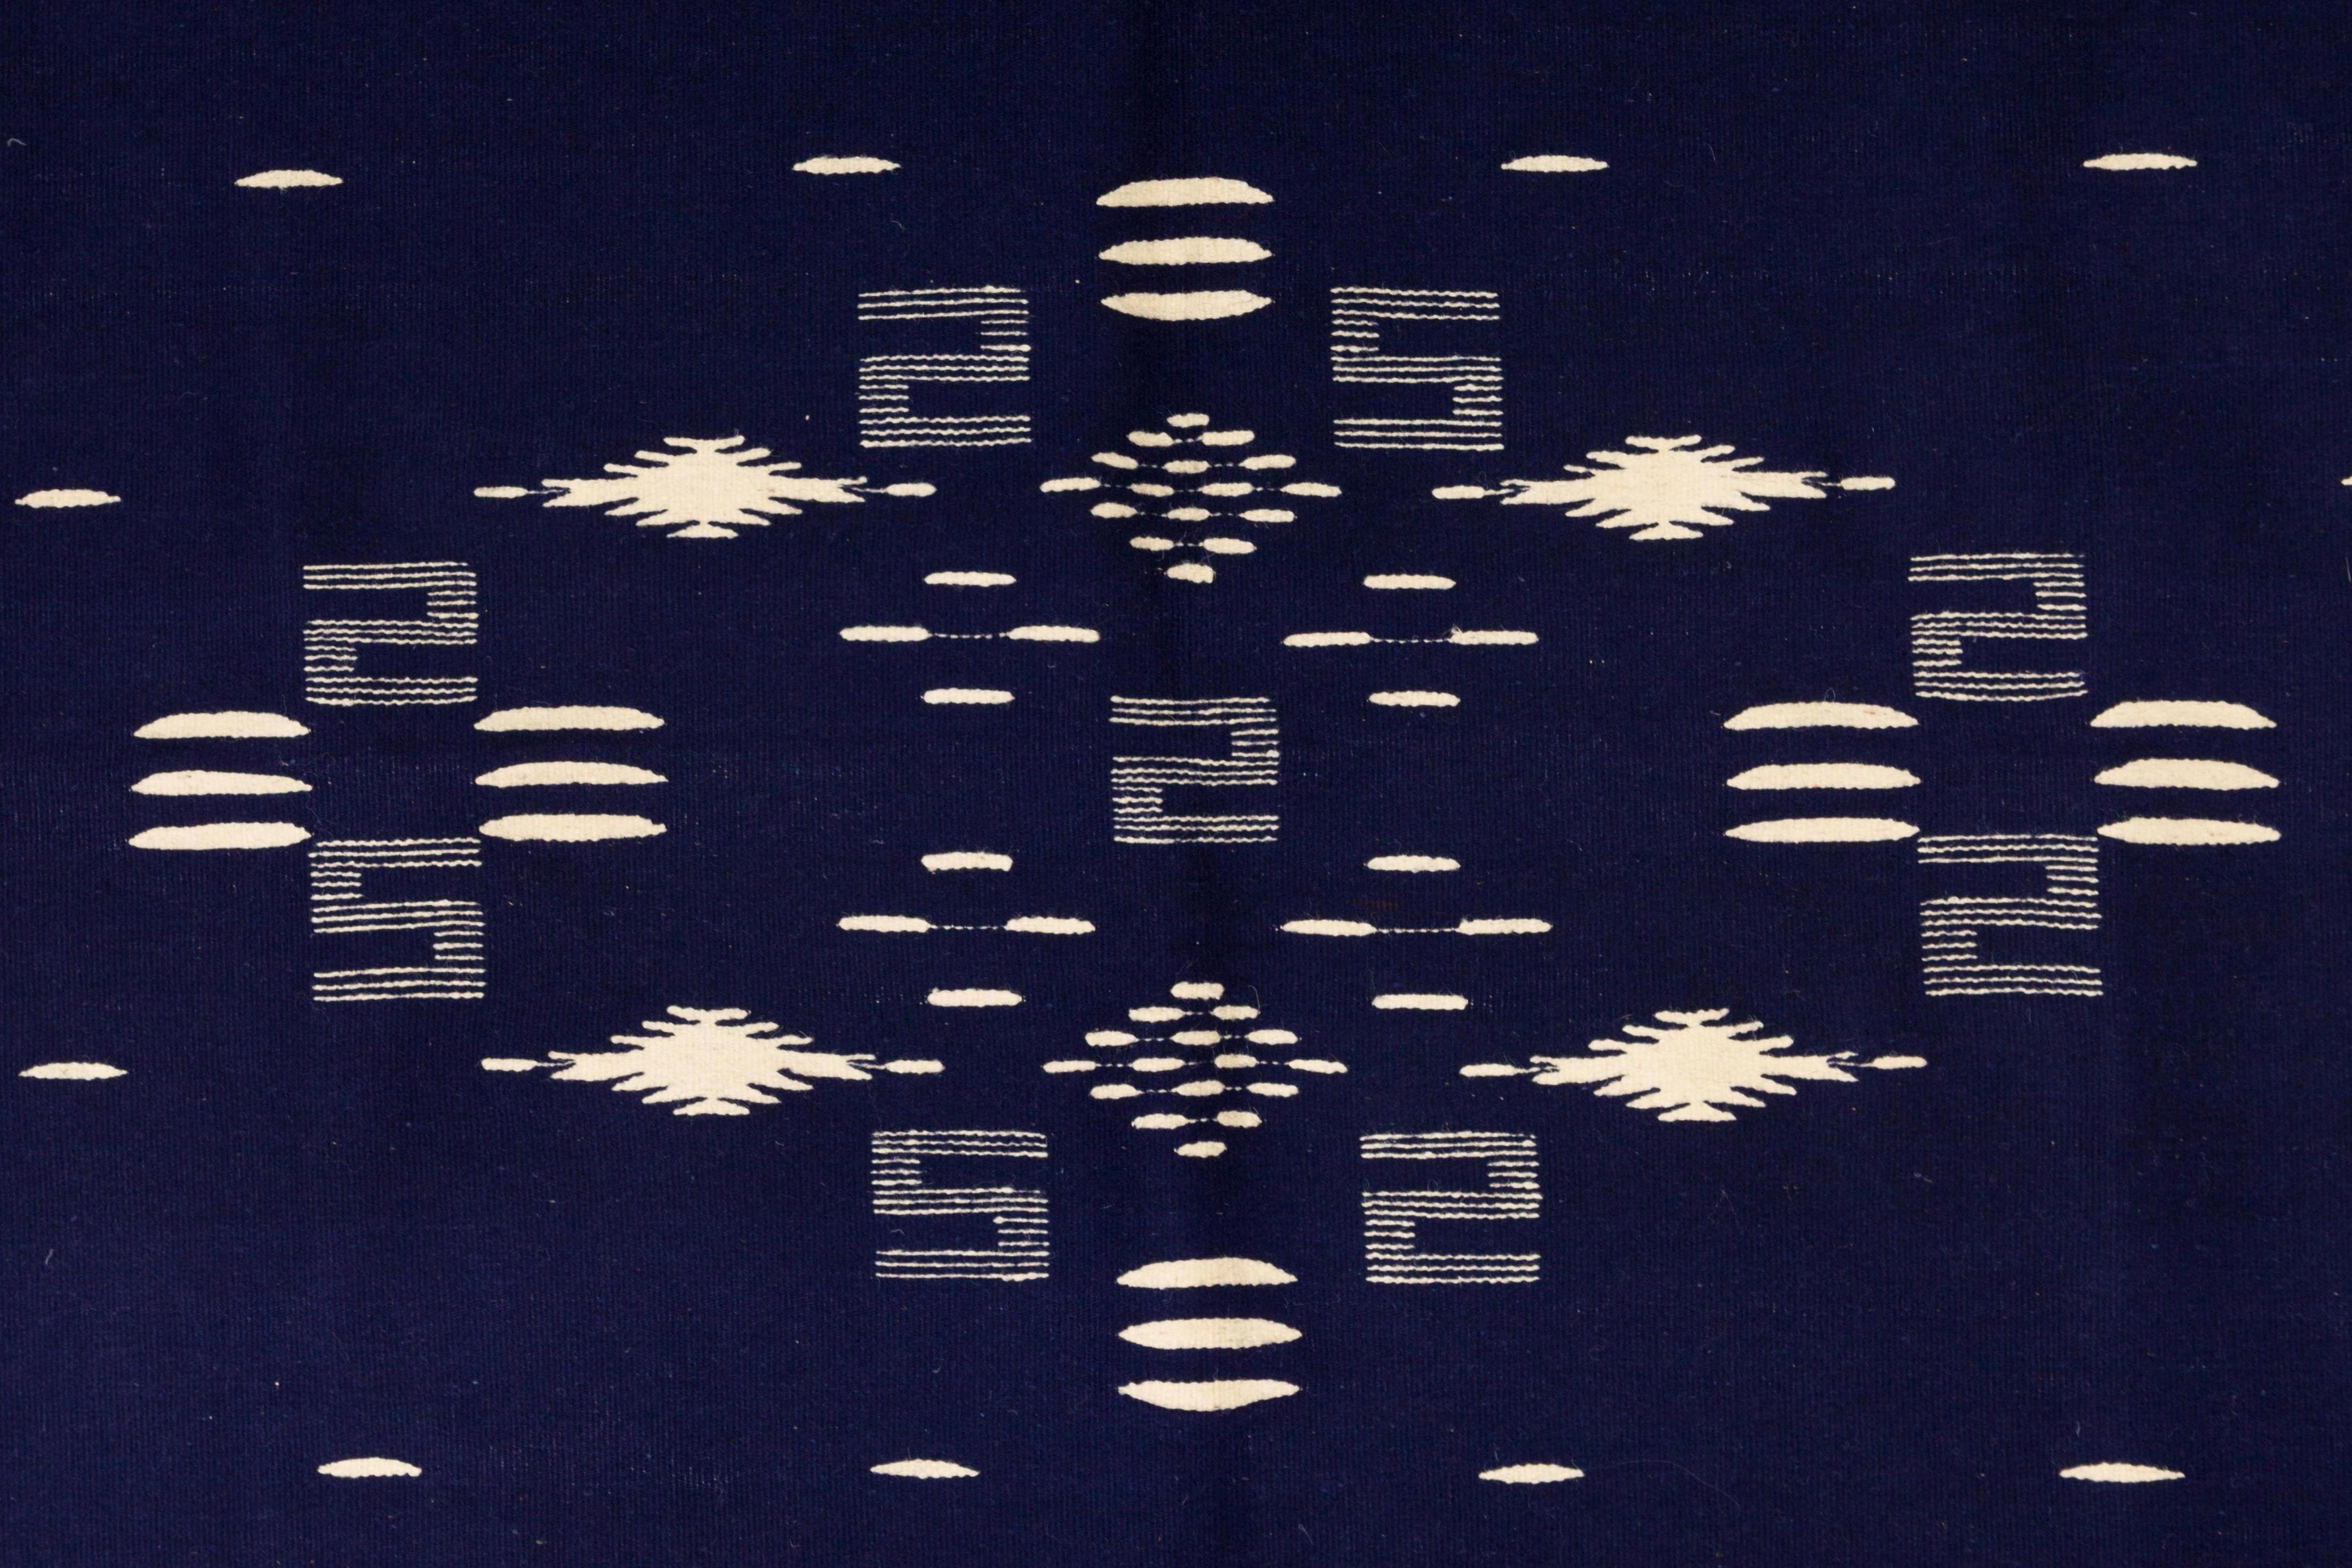 Couverture serape en laine naturelle indigo et ivoire, tissée à la main à Texcoco, avec des motifs traditionnels. Mesures : 83